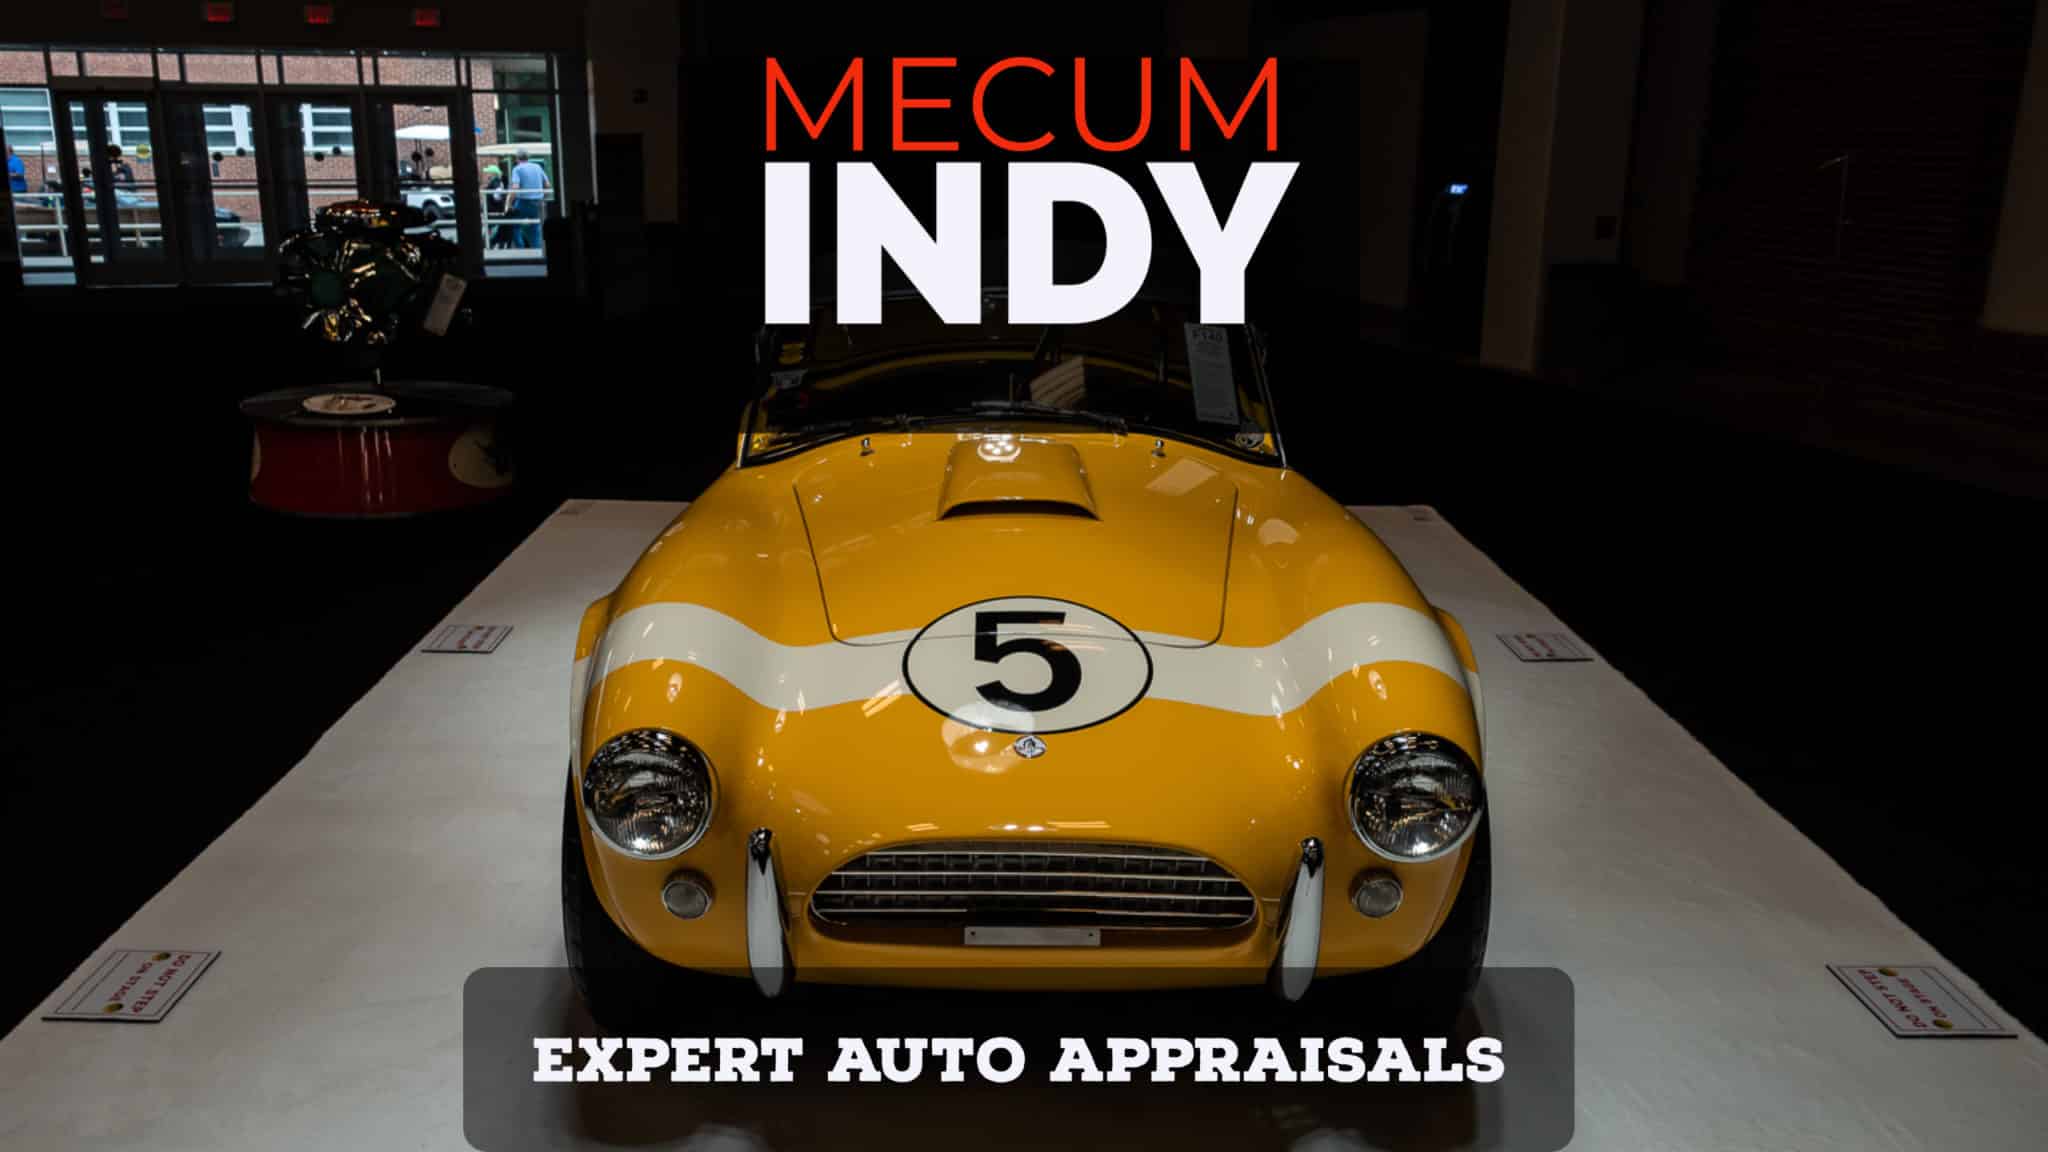 Mecum Indianapolis 2021 Auction Inspection Expert Auto Appraisals